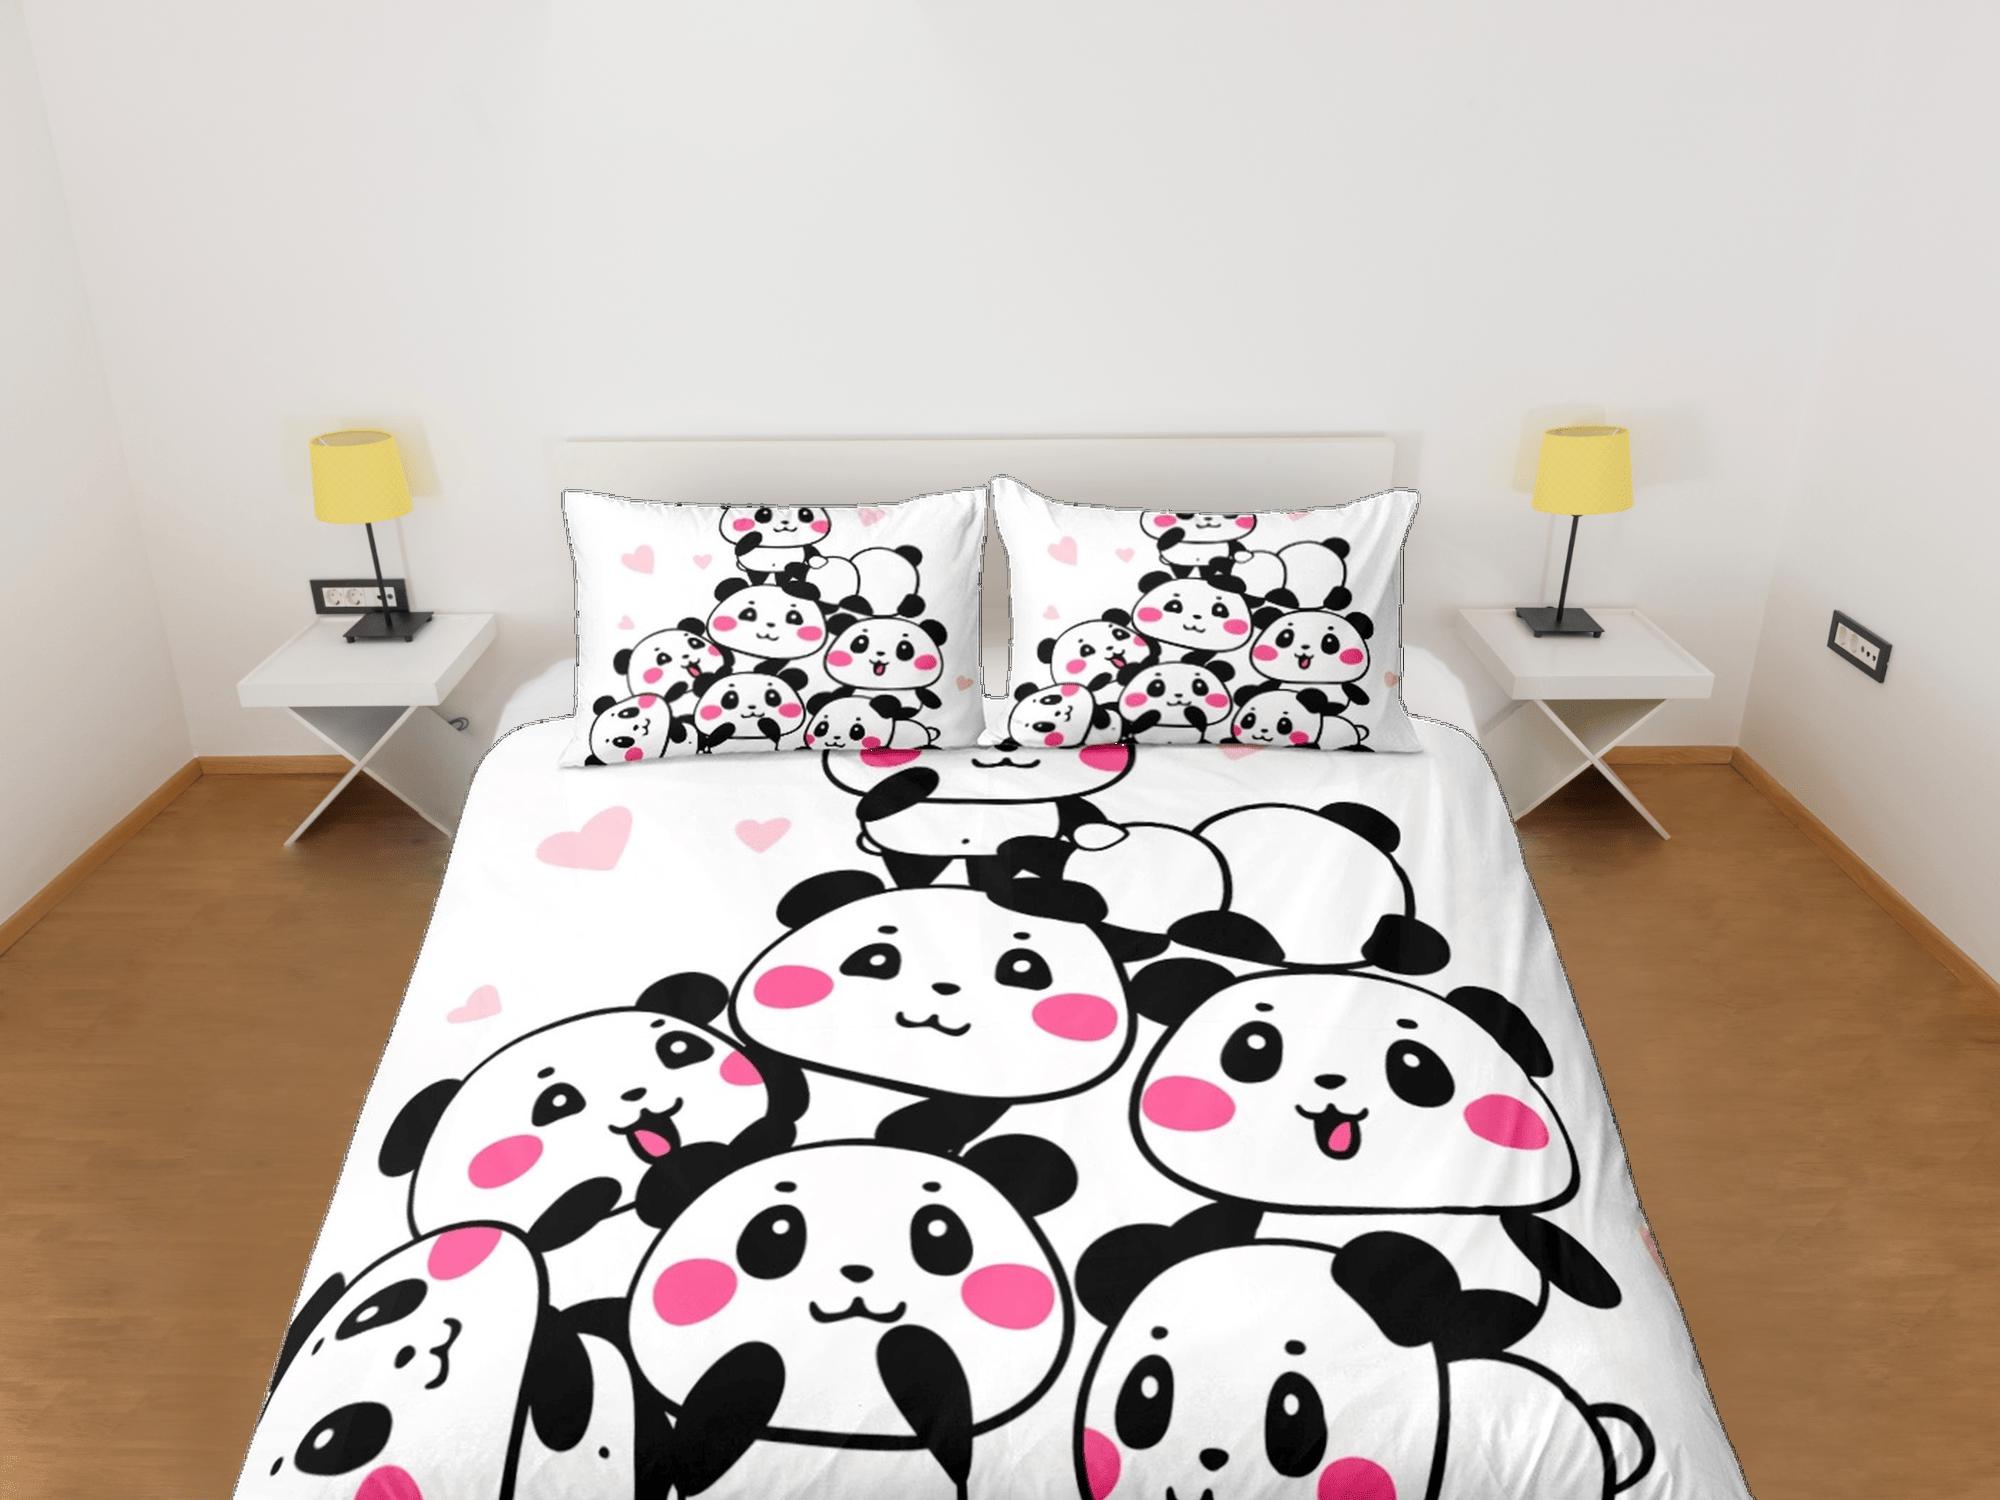 daintyduvet Baby panda club duvet cover for kids, bedding set full, king, queen, dorm bedding, toddler bedding, aesthetic bedspread, panda lovers gift